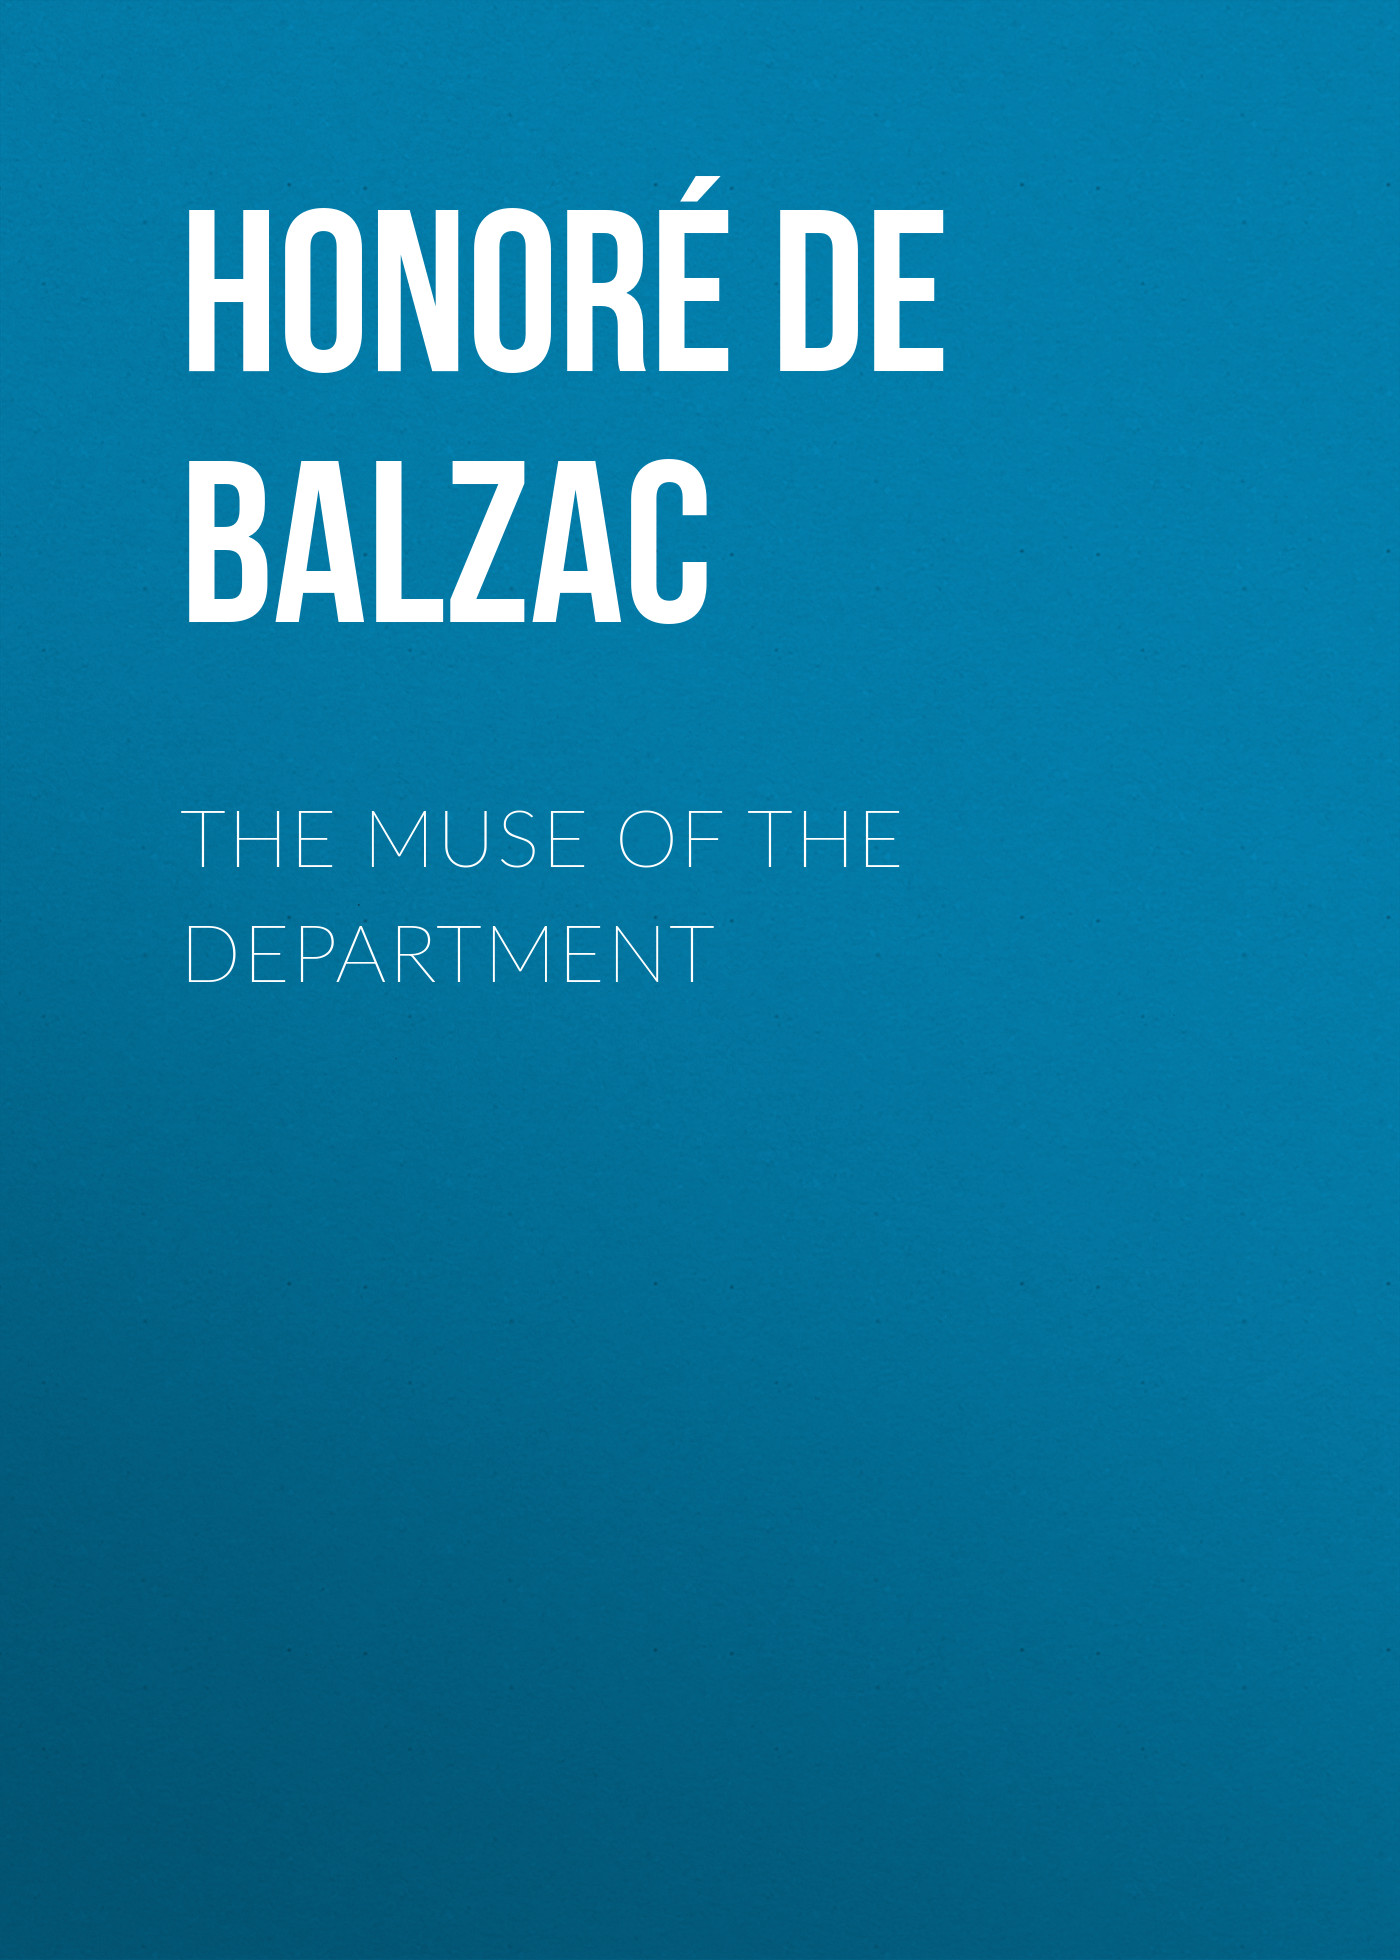 Книга The Muse of the Department из серии , созданная Honoré Balzac, может относится к жанру Литература 19 века, Зарубежная старинная литература, Зарубежная классика. Стоимость электронной книги The Muse of the Department с идентификатором 25020035 составляет 0 руб.